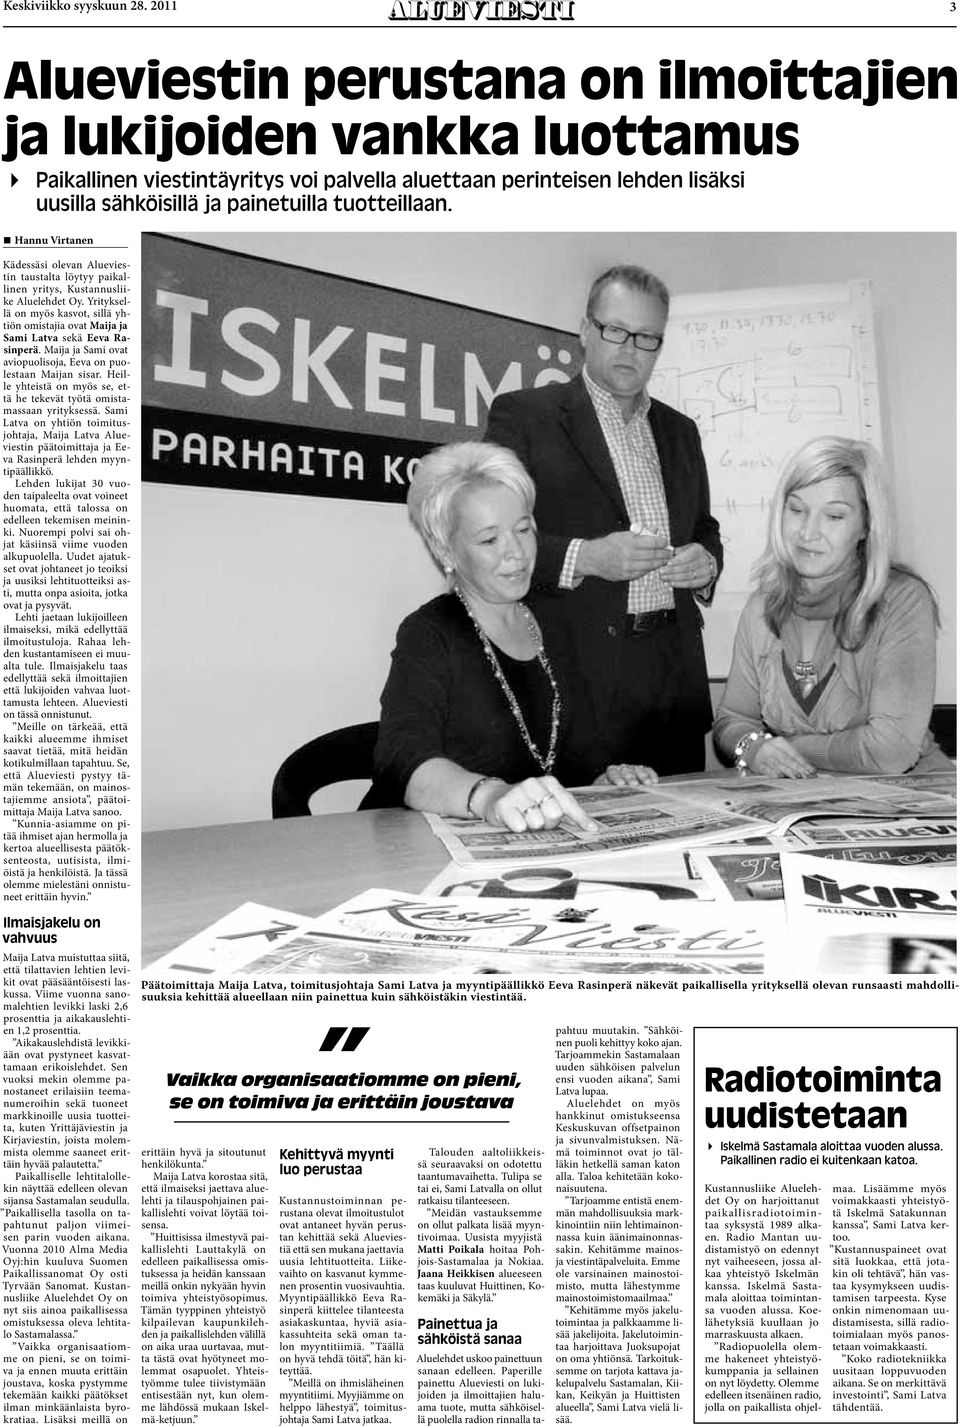 tuotteillaan.! Hannu Virtanen Kädessäsi olevan Alueviestin taustalta löytyy paikallinen yritys, Kustannusliike Aluelehdet Oy.